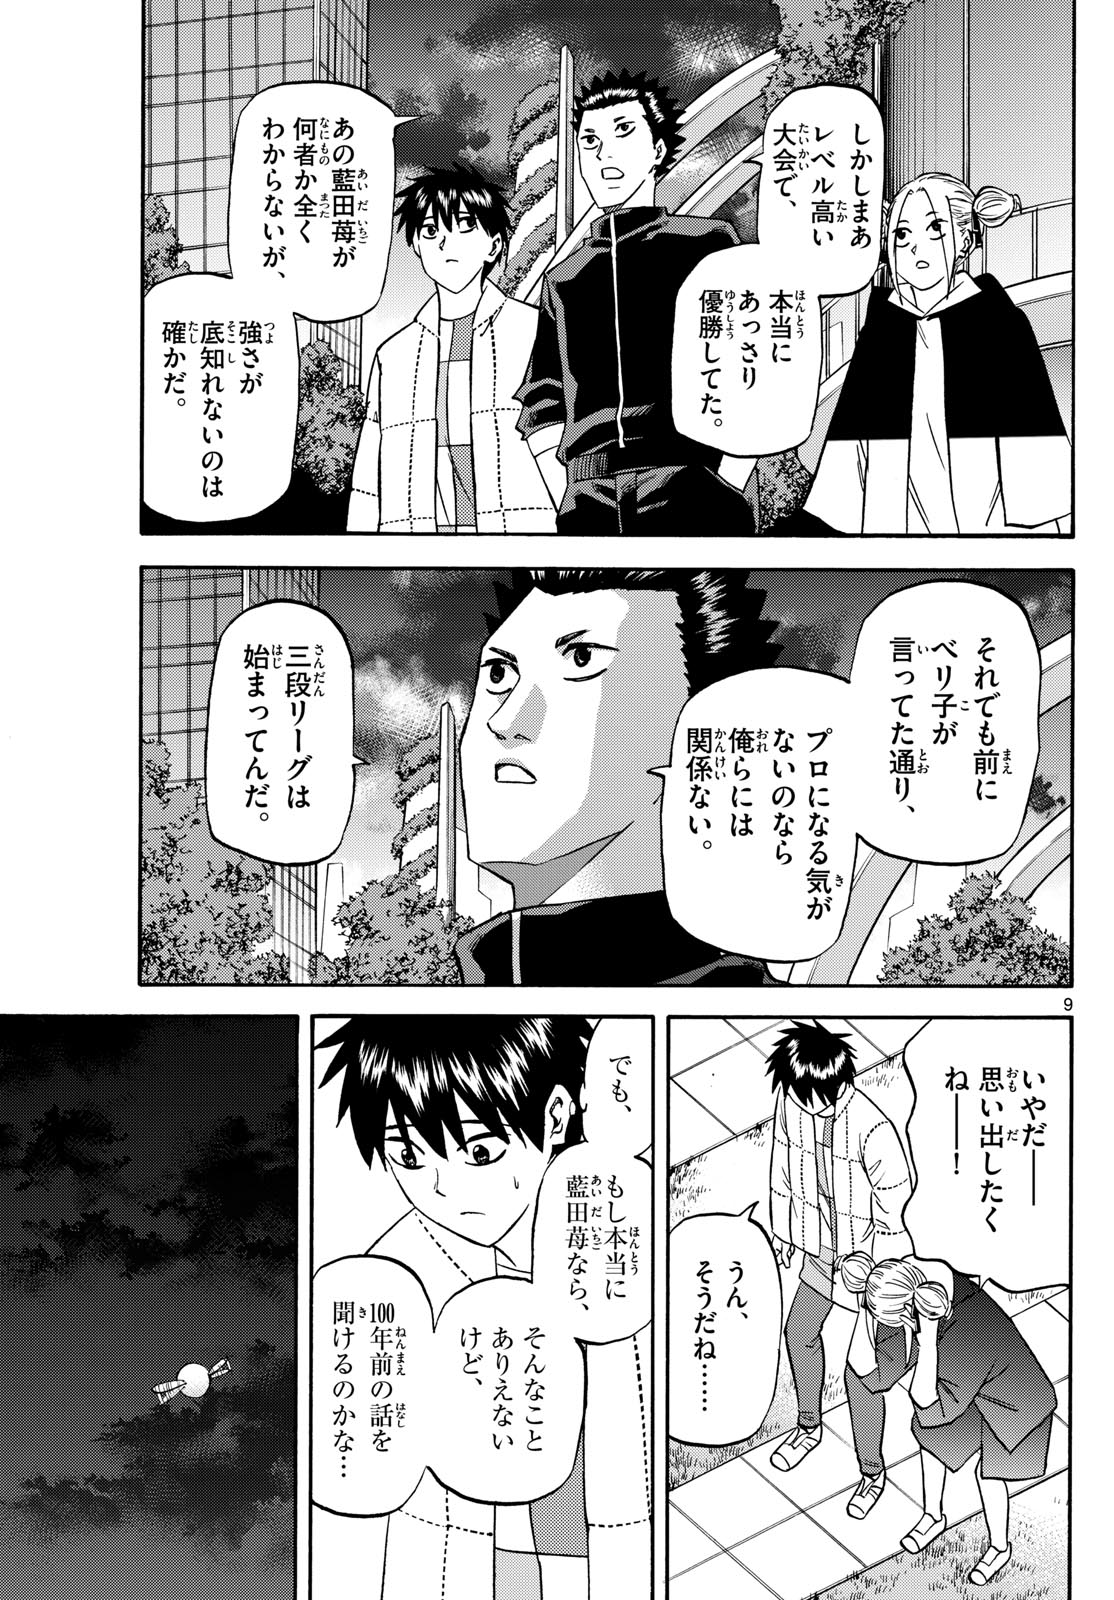 Tatsu to Ichigo - Chapter 186 - Page 9